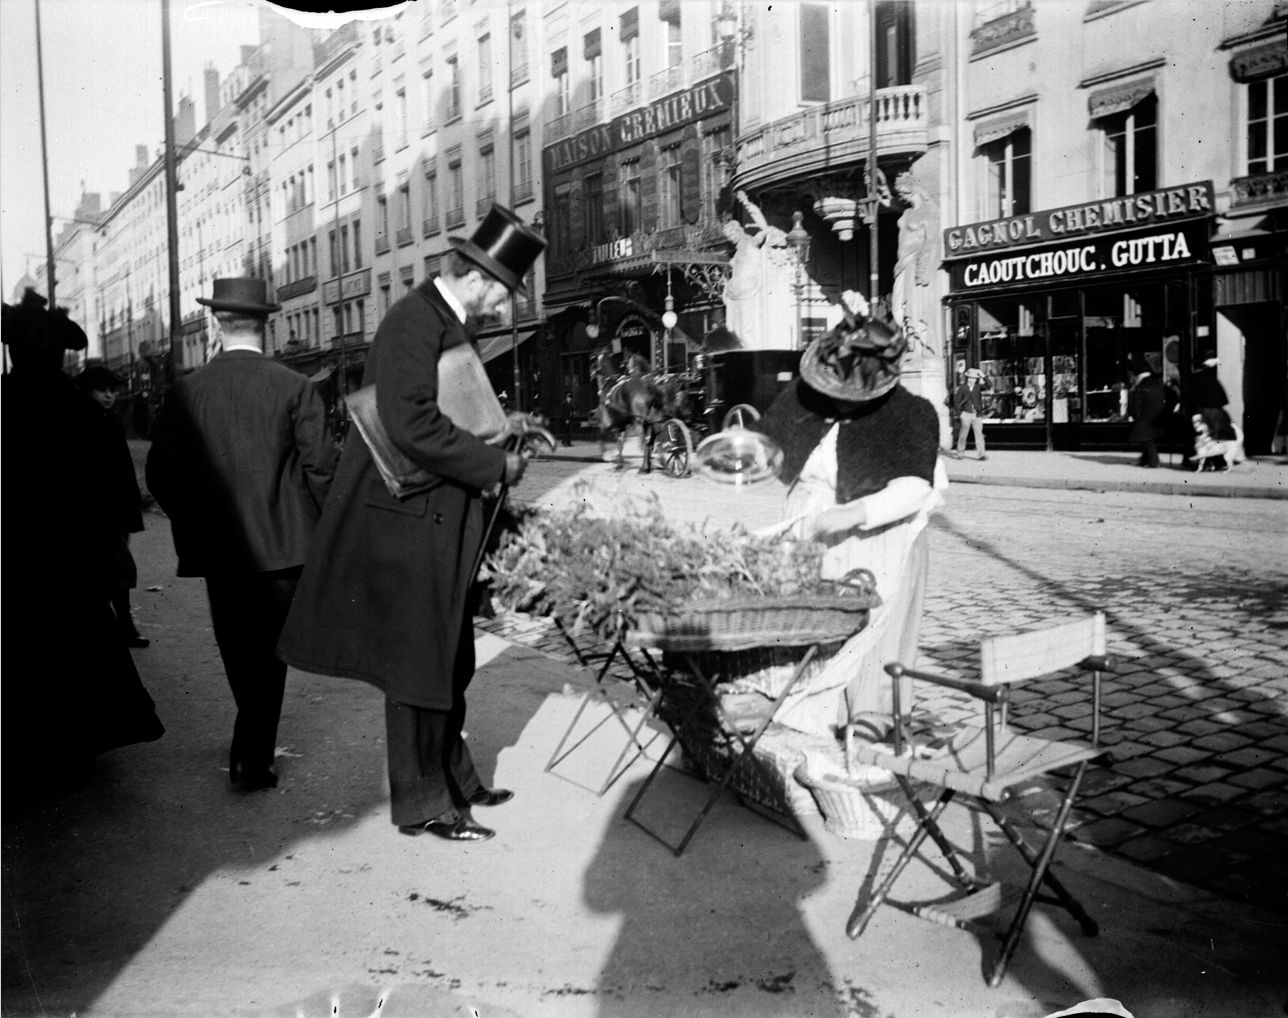 Marchande de plantes médicinales (?) à l'extrémité de la rue de la République : photo négative NB sur plaque de verre (vers 1900, cote : 10PH/152)